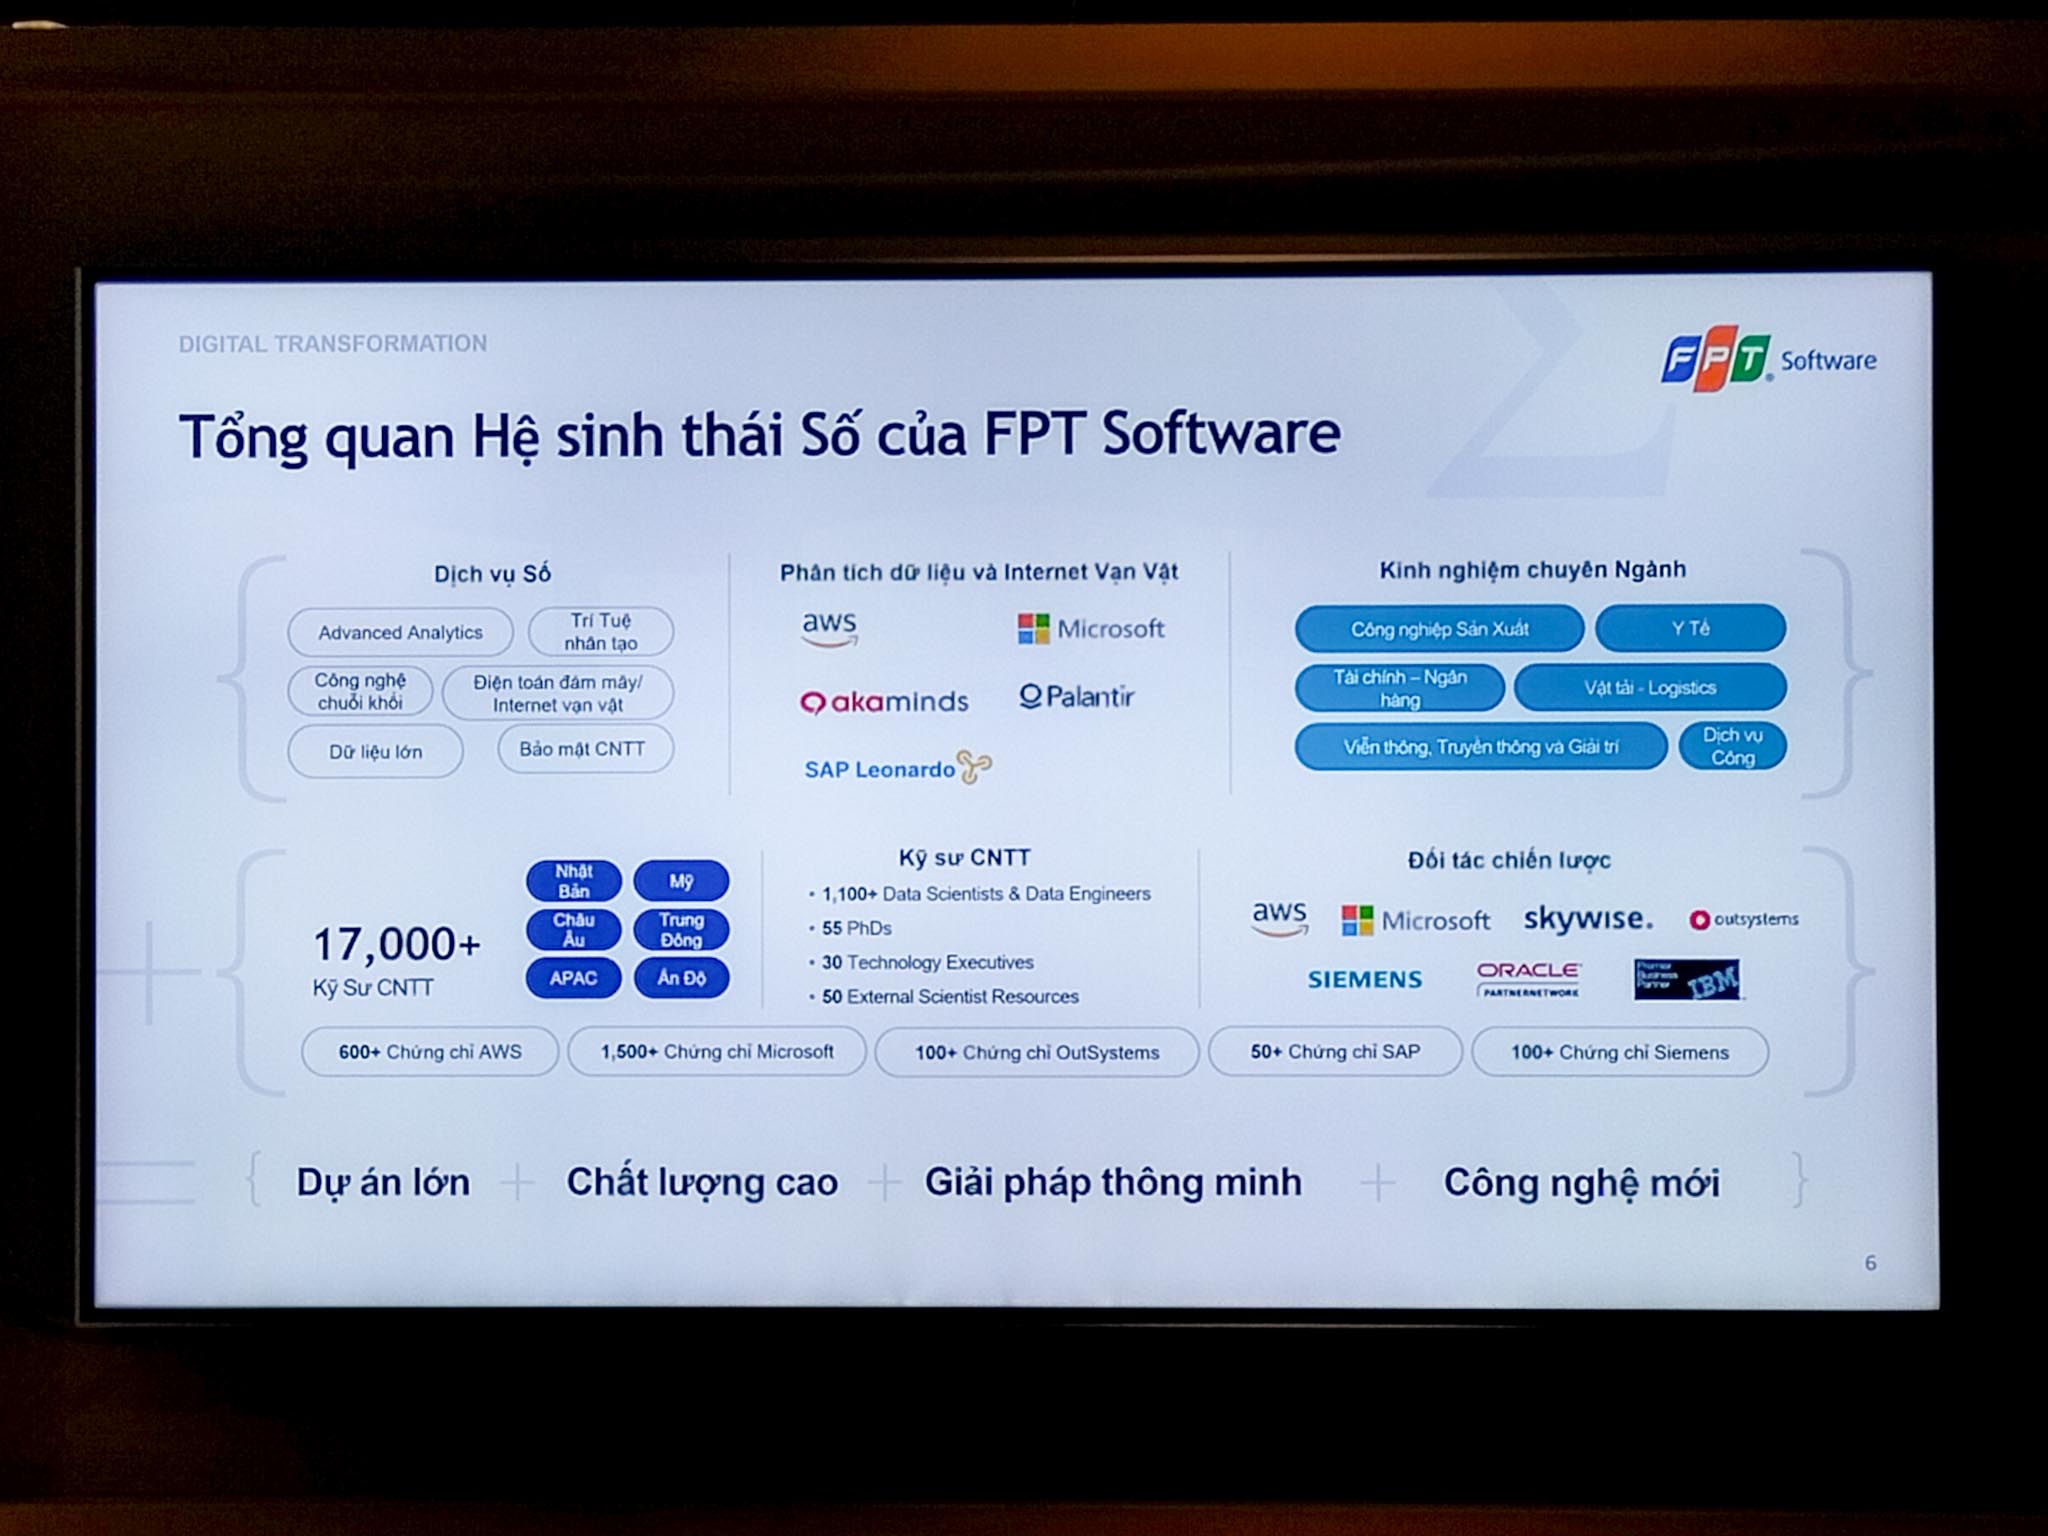 Sứ mệnh của FPT Software trong công cuộc chuyển đổi số tại Việt Nam